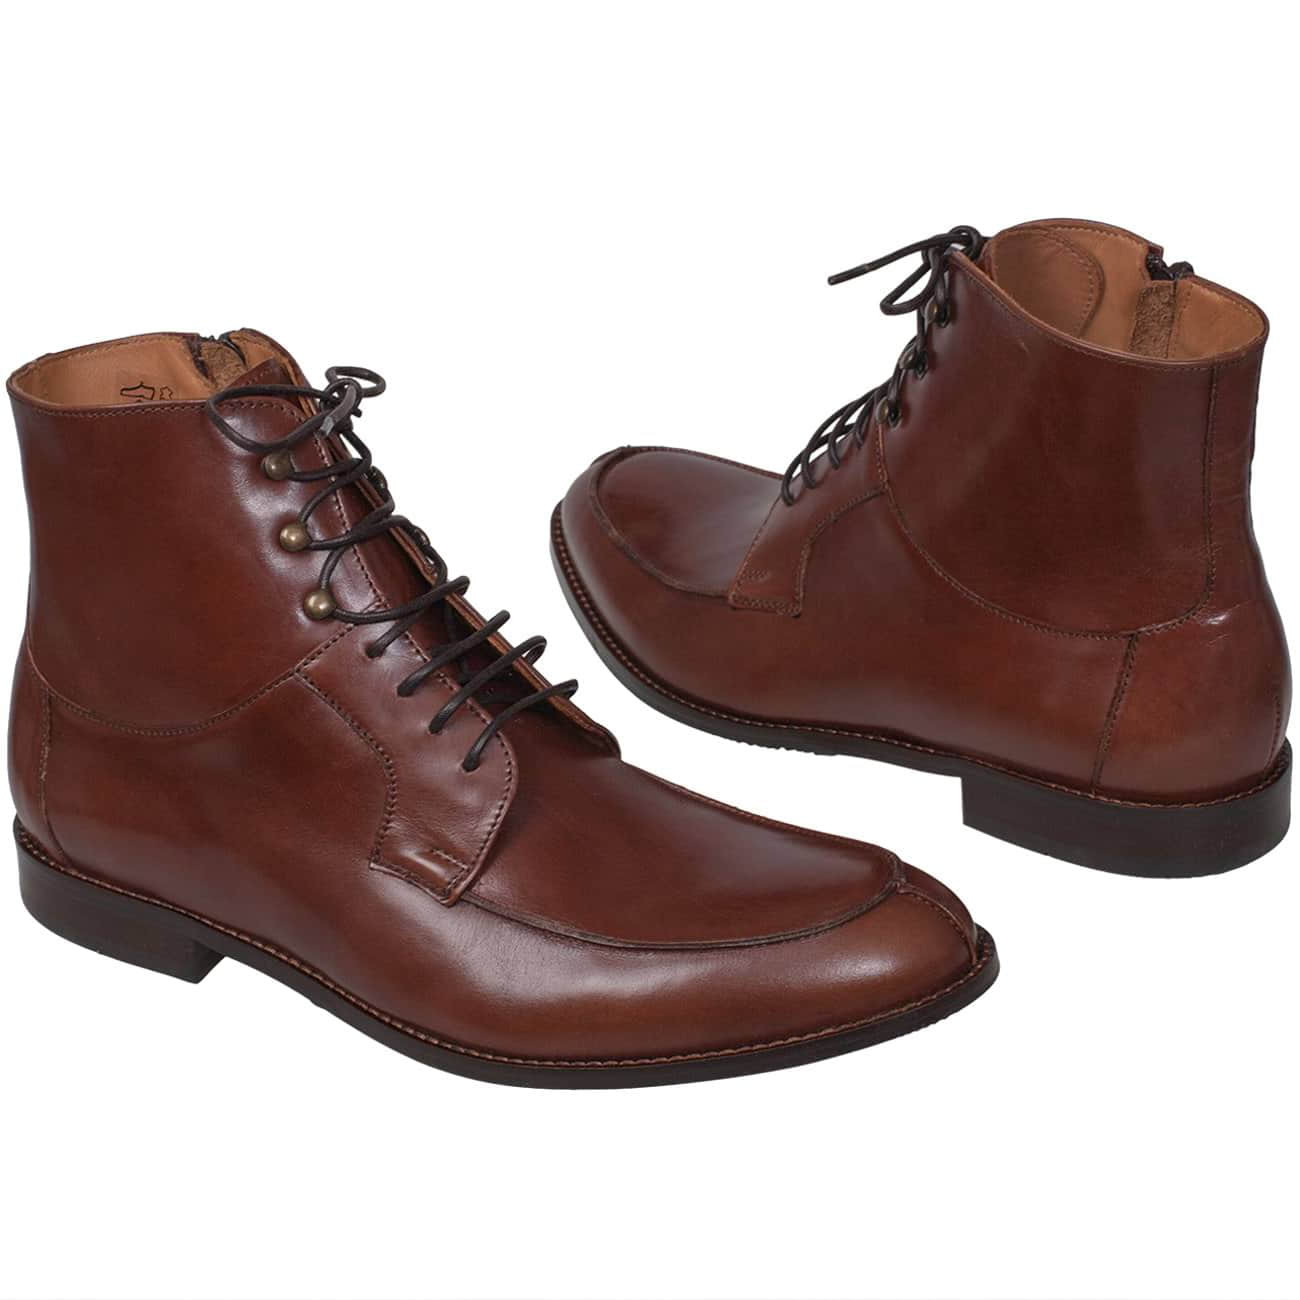 Купить коричневые ботинки мужские. Hans - мужские коричневые кожаные ботинки - 09848214. Ботинки на шнуровке Chester. Кожаные коричневые ботинки. Коричневые ботинки женские на шнурках.